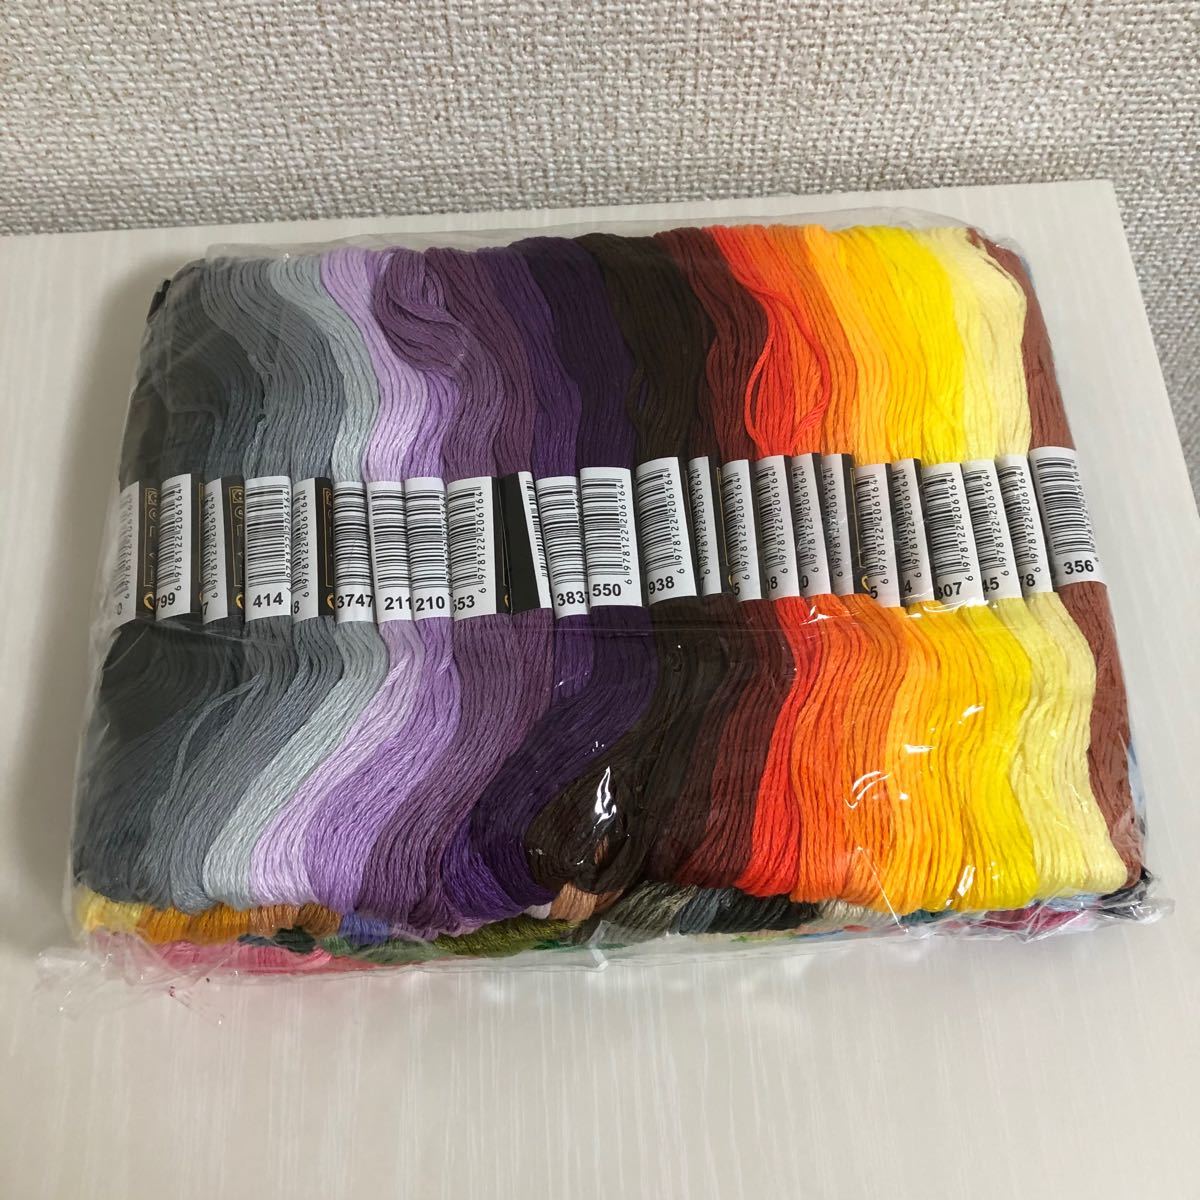 【刺繍糸 100色】刺繍糸 ハンドメイド クロスステッチ ミサンガ 手縫い用